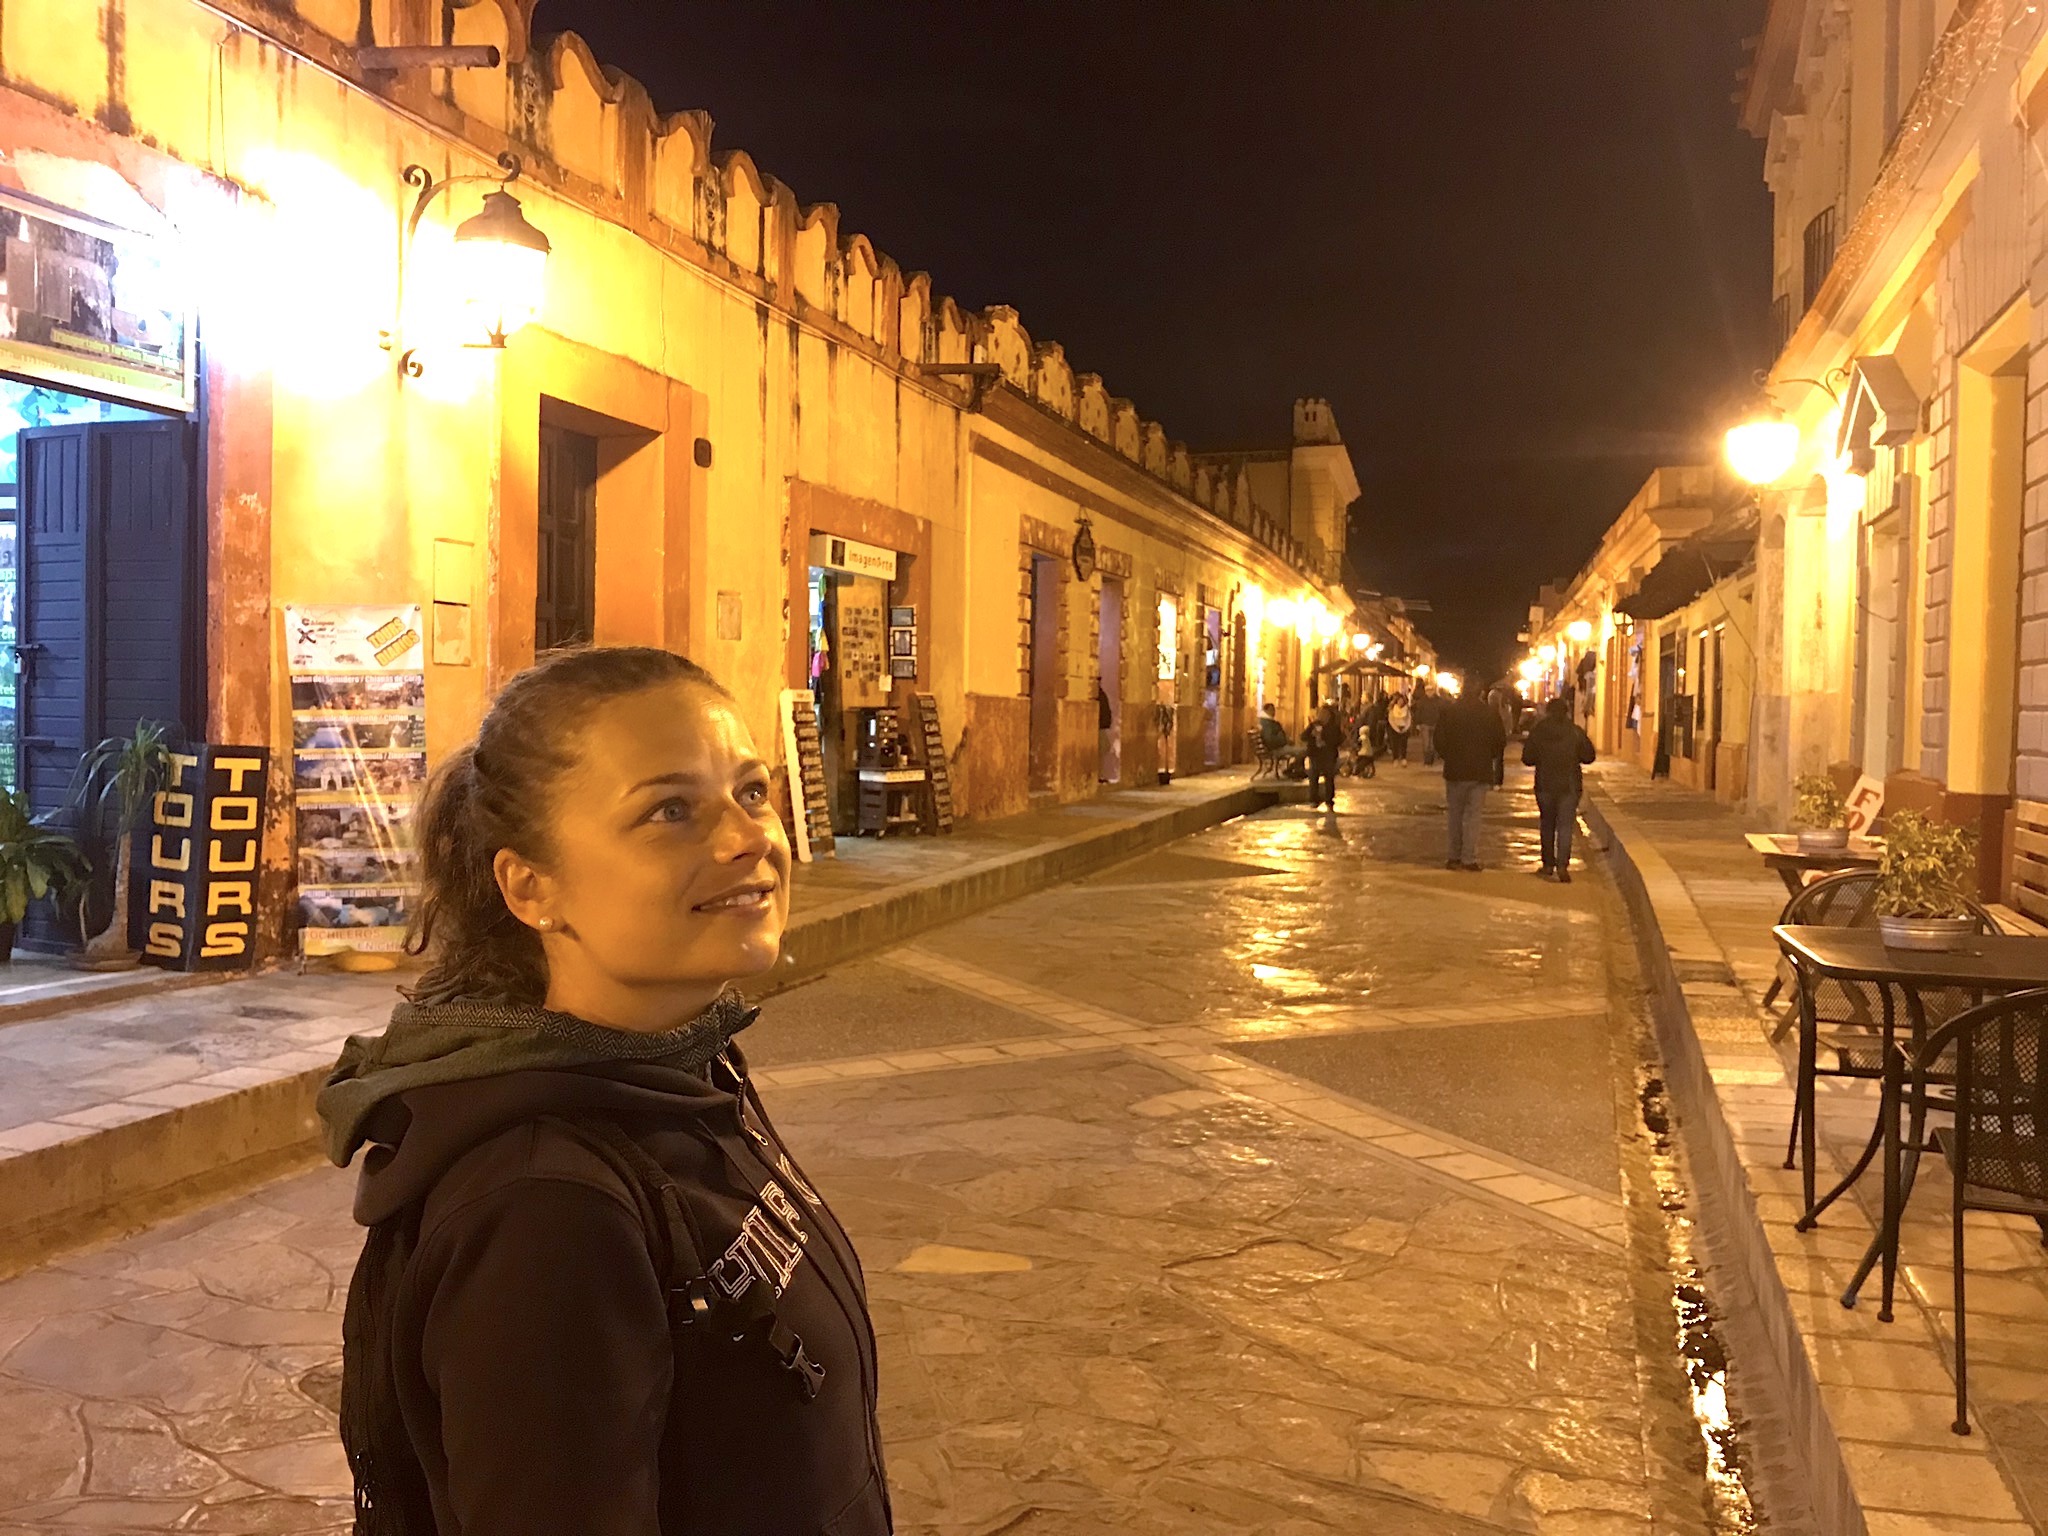 Discovering San Cristobal de las Casas by night